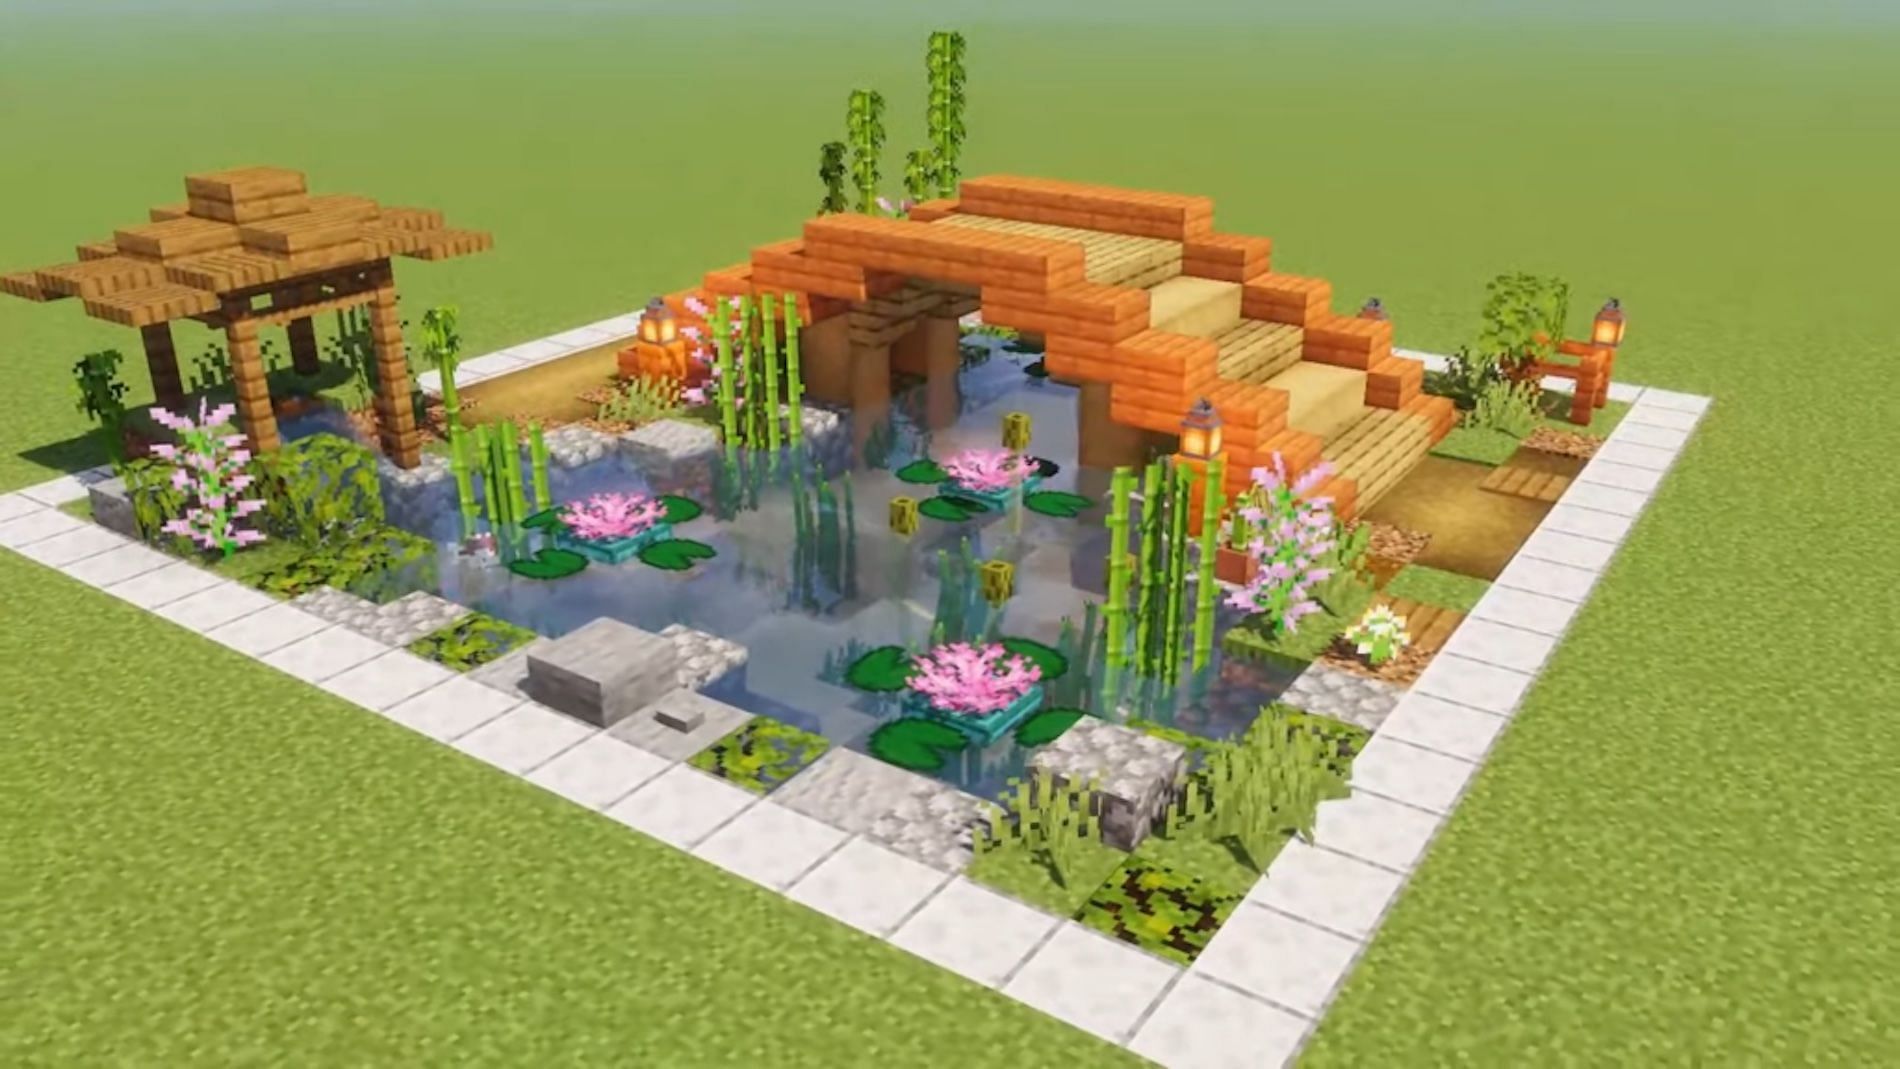 10 best Minecraft garden designs to build in 2022